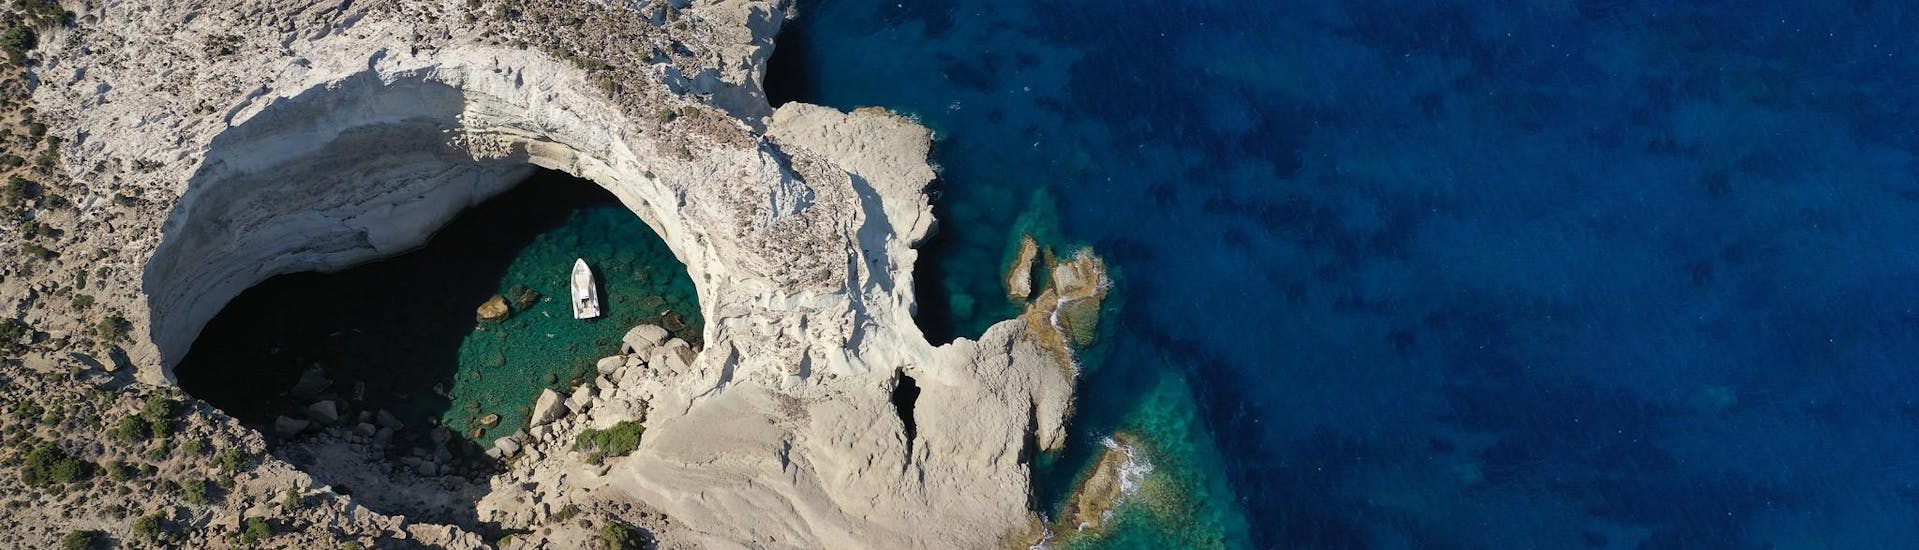 Vista aerea delle Grotte di Sikia, un luogo meraviglioso che si può visitare durante una gita in barca a Milos.